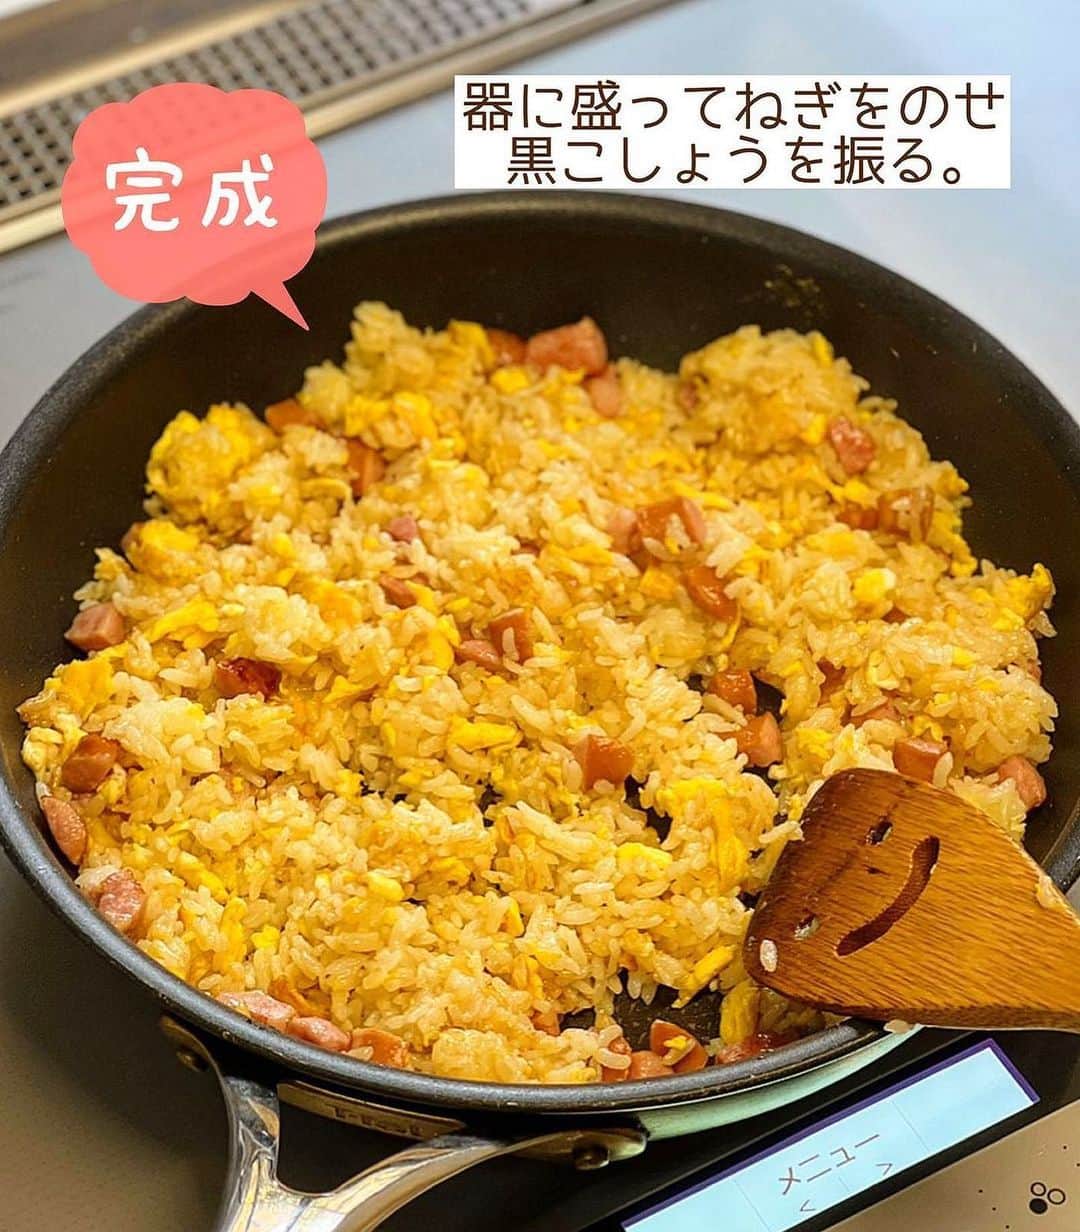 Mizuki【料理ブロガー・簡単レシピ】さんのインスタグラム写真 - (Mizuki【料理ブロガー・簡単レシピ】Instagram)「・春休みごはんに🌸 ⁡ ［#レシピ ］ ーーーーーーーーーーーーーーーーーー 卵とウインナーのシンプルチャーハン ーーーーーーーーーーーーーーーーーー ⁡ ⁡ ⁡ おはようございます☺️ ⁡ 今日ご紹介させていただくのは あっという間にできる \ シンプルチャーハン / (再掲載✨) ⁡ 具は卵とウインナーだけ💕 準備がラクなのはもちろん 水分が出にくい食材だけで パラパラに仕上がりますよ〜🍳 味付けはコクのある鶏がら醤油で 何度でも食べたくなるおいしさです✨ ⁡ コスパも抜群なので よかったらお試し下さいね😋 ⁡ ⁡ 【簡単・時短・節約レシピ更新中🔻】 @mizuki_31cafe ⁡ ⁡ ⁡ ＿＿＿＿＿＿＿＿＿＿＿＿＿＿＿＿＿＿＿ 【2人分】 温かいごはん...400g 卵...2個 ウインナー...4本 ごま油...大1 ●鶏がらスープ・醤油...各大1/2 ●塩こしょう...少々 ねぎ(小口切り)・粗挽き黒こしょう...各適量 ⁡ 1.卵は溶きほぐす。ウインナーは細かめに切る。 2.フライパンにごま油を中火で熱し、溶き卵を流し入れる。半熟になってきたらごはんとウインナーを加え、手早く炒める。 3.ごはんがパラパラになったら●を加えて炒め合わせる。器に盛ってねぎをのせ、黒こしょうを振る。 ￣￣￣￣￣￣￣￣￣￣￣￣￣￣￣￣￣￣ ⁡ ⁡ 《ポイント》 ♦︎ウインナーの代わりに焼き豚やベーコンを使用しても○ ♦︎''卵がかたまる前に''ごはんとウインナーを加え、手早く炒めます♩ ♦︎(余裕があれば)醤油は鍋肌から加えると香ばしくなります♩ ⁡ ⁡ ⁡ ⁡ ⁡ ⁡ 𖤣𖥧𖥣𖡡𖥧𖤣✨ 愛用している調理器具や器などは #楽天ROOMに載せてます ‎𐩢𐩺 (ハイライトから飛べます🛍) ⁡ ⁡ ⁡ ⁡ ⁡ ⁡ ⁡ 🔶全国の書店・ネット書店で発売中🔶 ⁡ ✼••┈┈┈┈┈••✼••┈┈┈┈┈••✼ 今日のごはんこれに決まり！ ‎𓊆#Mizukiのレシピノート 500品𓊇 ✼••┈┈┈┈┈••✼••┈┈┈┈┈••✼ ⁡ ˗ˏˋ おかげさまで23万部突破 ˎˊ˗ 料理レシピ本大賞準大賞を受賞しました🙇‍♀️ ⁡ 6000点の中からレシピを厳選し まさかの【500レシピ掲載】❣️ 肉や魚のメインおかずはもちろん 副菜、丼、麺、スープ、お菓子 ハレの日のレシピ、鍋のレシピまで 全てこの一冊で完結𓌉◯𓇋✨ ⁡ ⁡ ⁡ 📕新刊発売中📕 ⁡ ✼••┈┈┈••✼••┈┈┈••✼ Mizukiのカンタン手作り   𓊆 #3時のおやつ 𓊇 ✼••┈┈┈••✼••┈┈┈••✼ ⁡ 『3分クッキング』で連載中の 「Mizukiのカンタン手作り」 ‎4年分のおやつが1冊になりました！ ❝オーブンなしで❞ 身近な材料と道具でできる 簡単、手軽なおやつを80品🍪 ⁡ ⁡ ⁡ ⁡ ⁡ ⁡ #卵とウインナーのシンプルチャーハンm #炒飯 #炒飯 #ウインナー #卵 #卵料理 #ランチ  #弁当 #弁当おかず #料理 #時短レシピ  #節約料理 #簡単料理  #時短料理  #mizukiレシピ  #アルモンデ #節約レシピ #簡単レシピ」3月27日 7時05分 - mizuki_31cafe